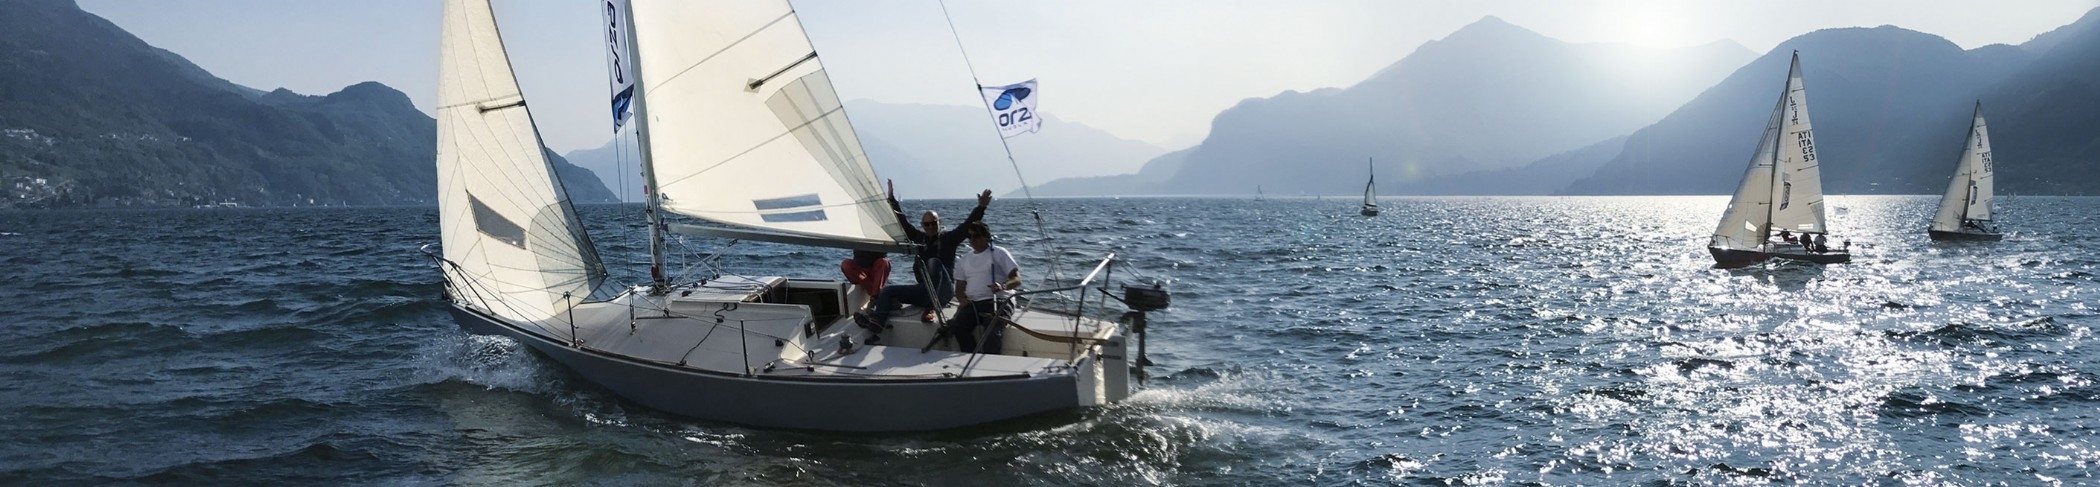 Sailing at Lake Como